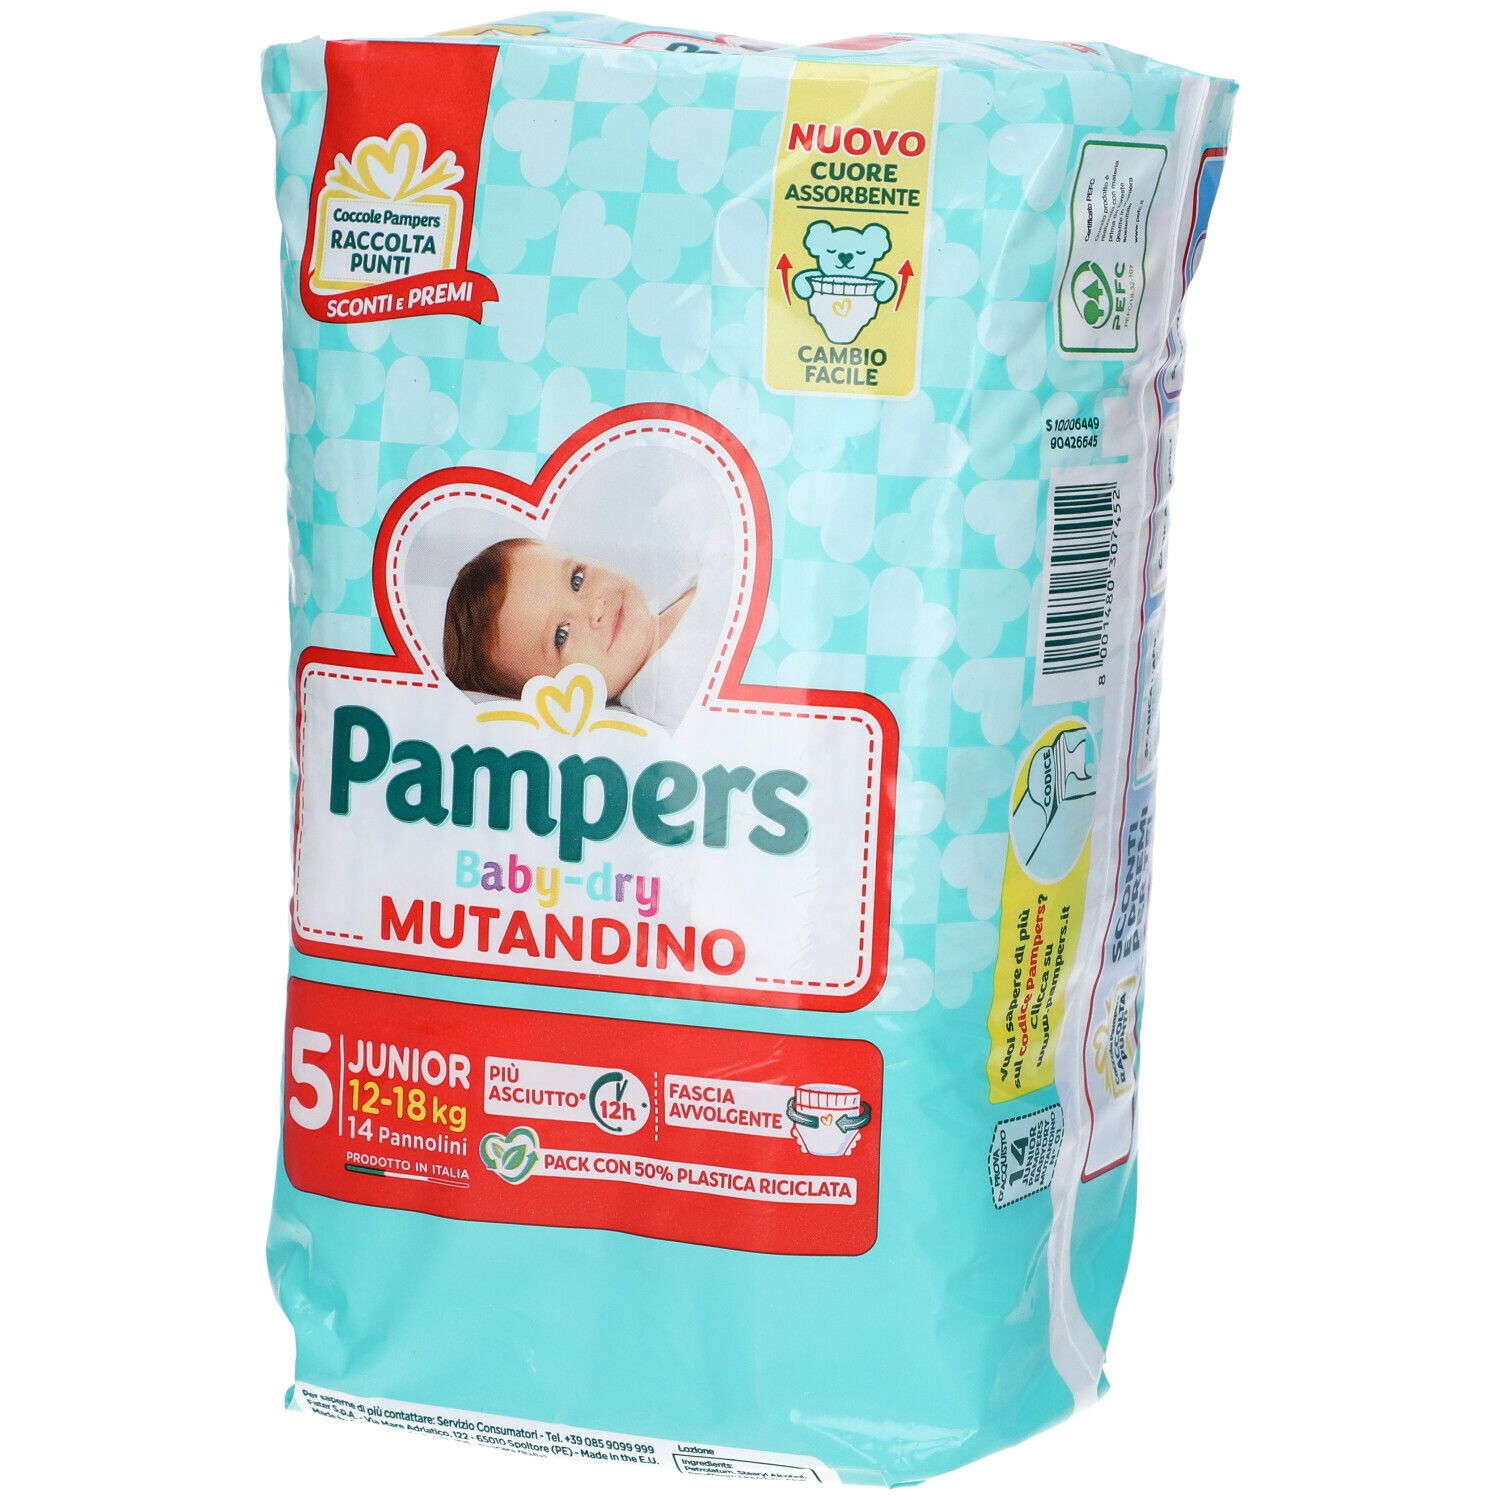 Image of Pampers Baby Dry Mutandino 5 Junior